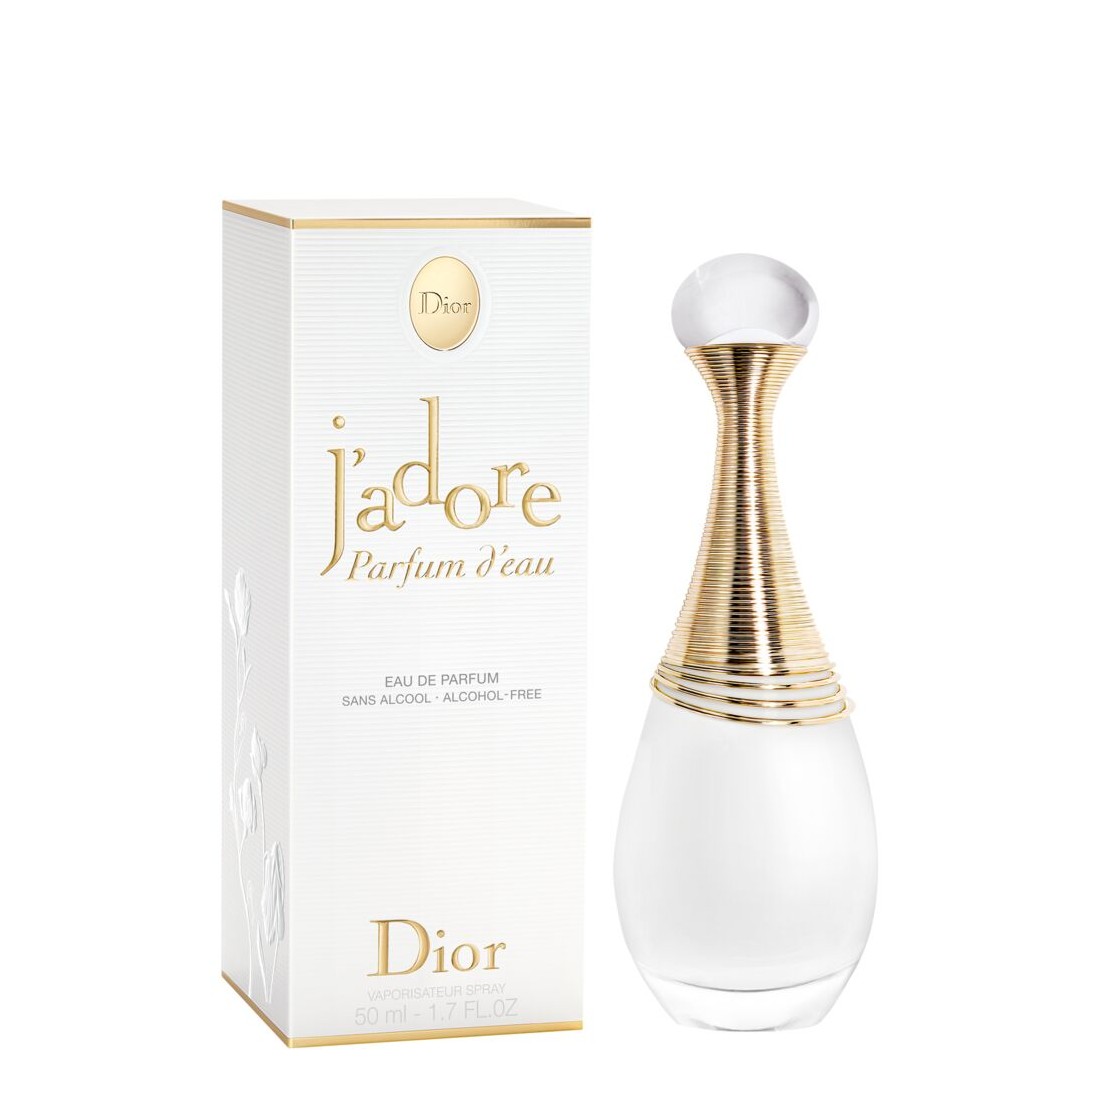 Dior J'adore - Parfum d'eau - Eau de Parfum - 50 ml